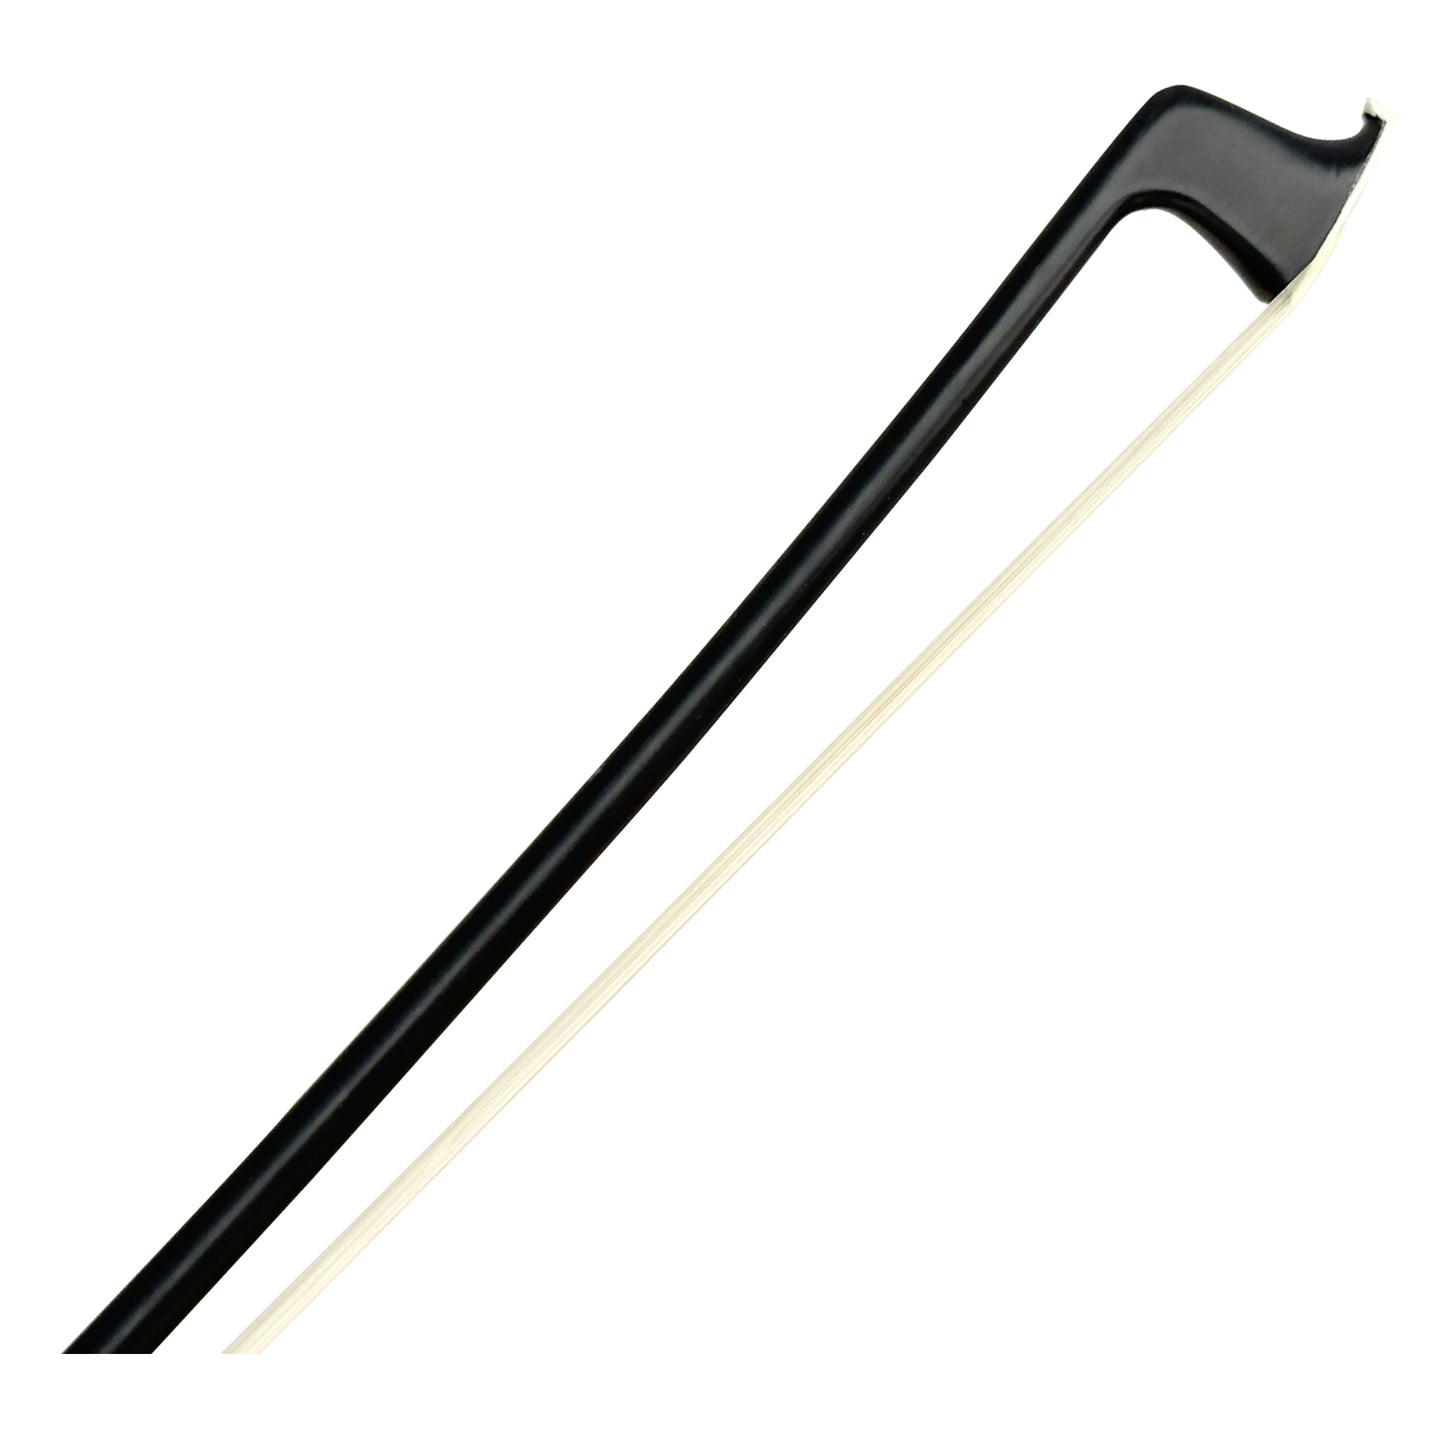 201v black carbon fiber violin bow tip